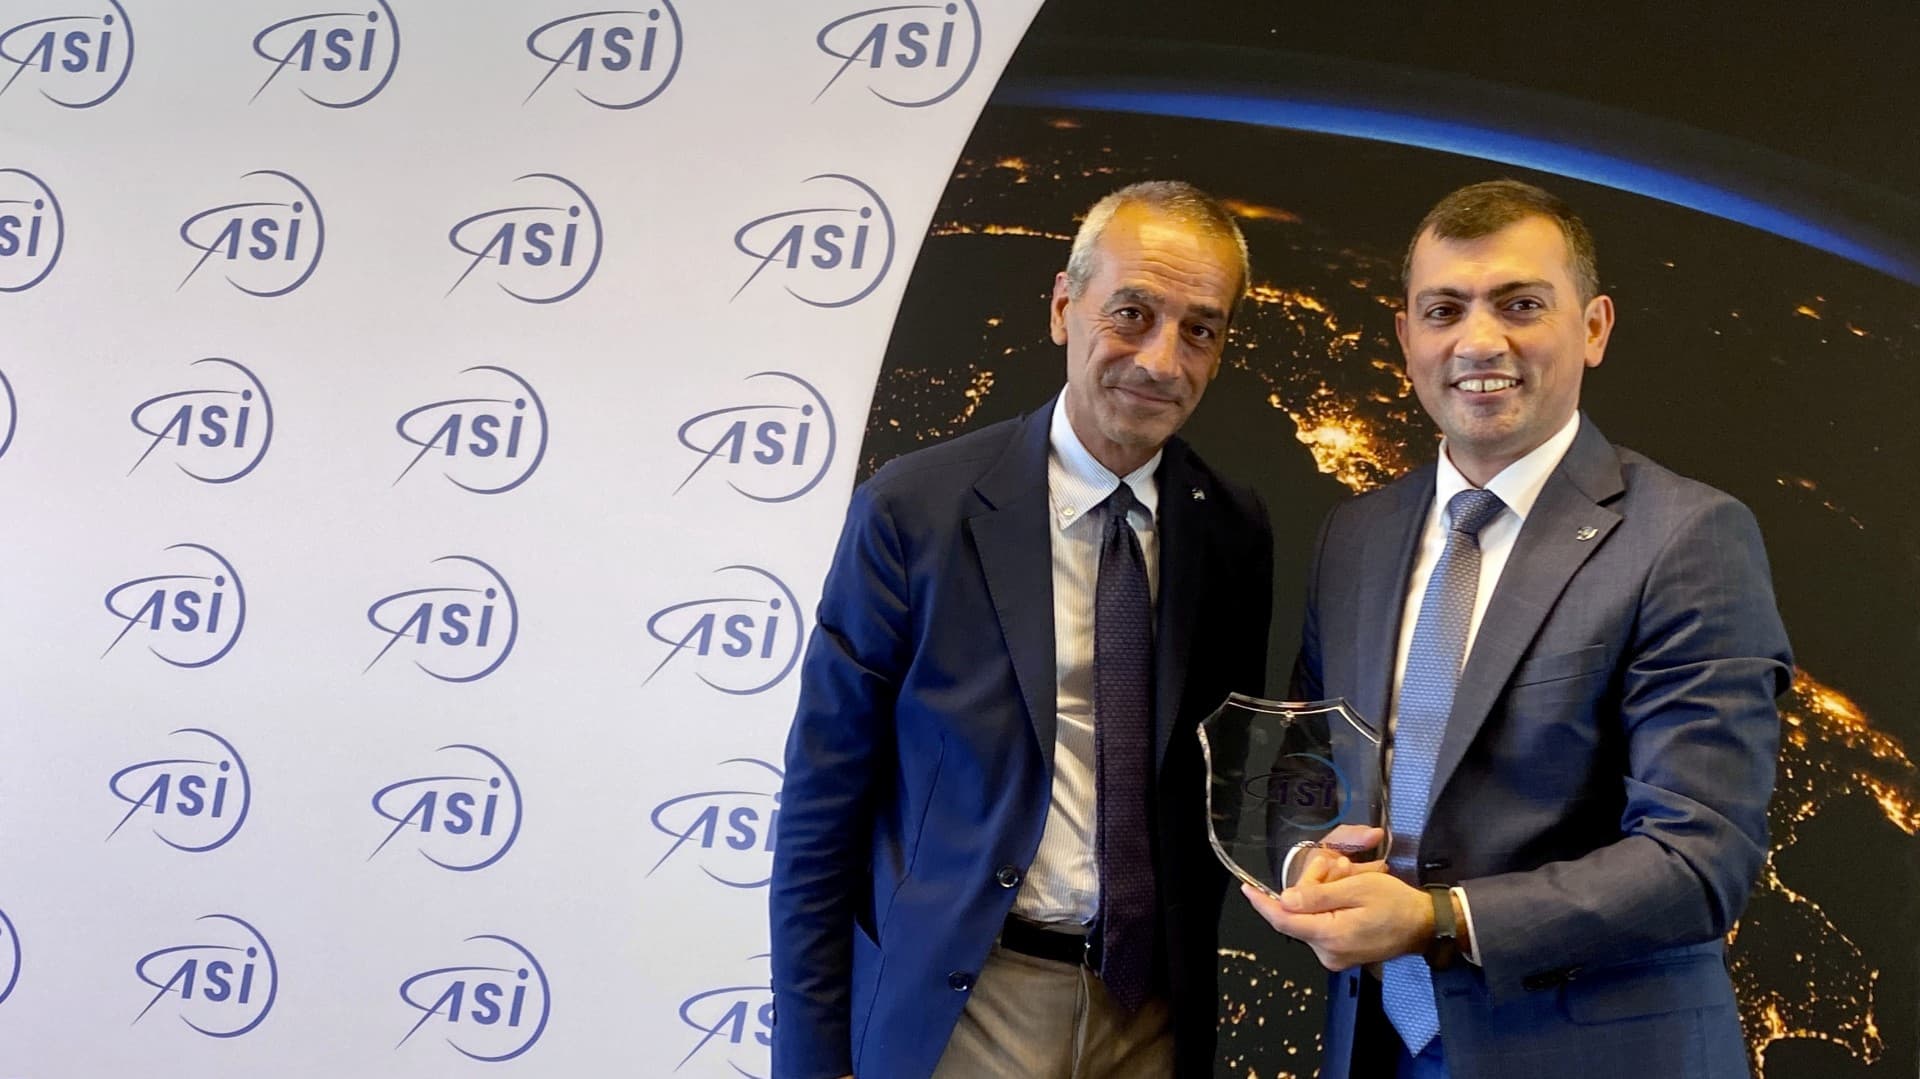 Il Vice Presidente di Azercosmos visita l’ASI, in vista dello IAC di Baku